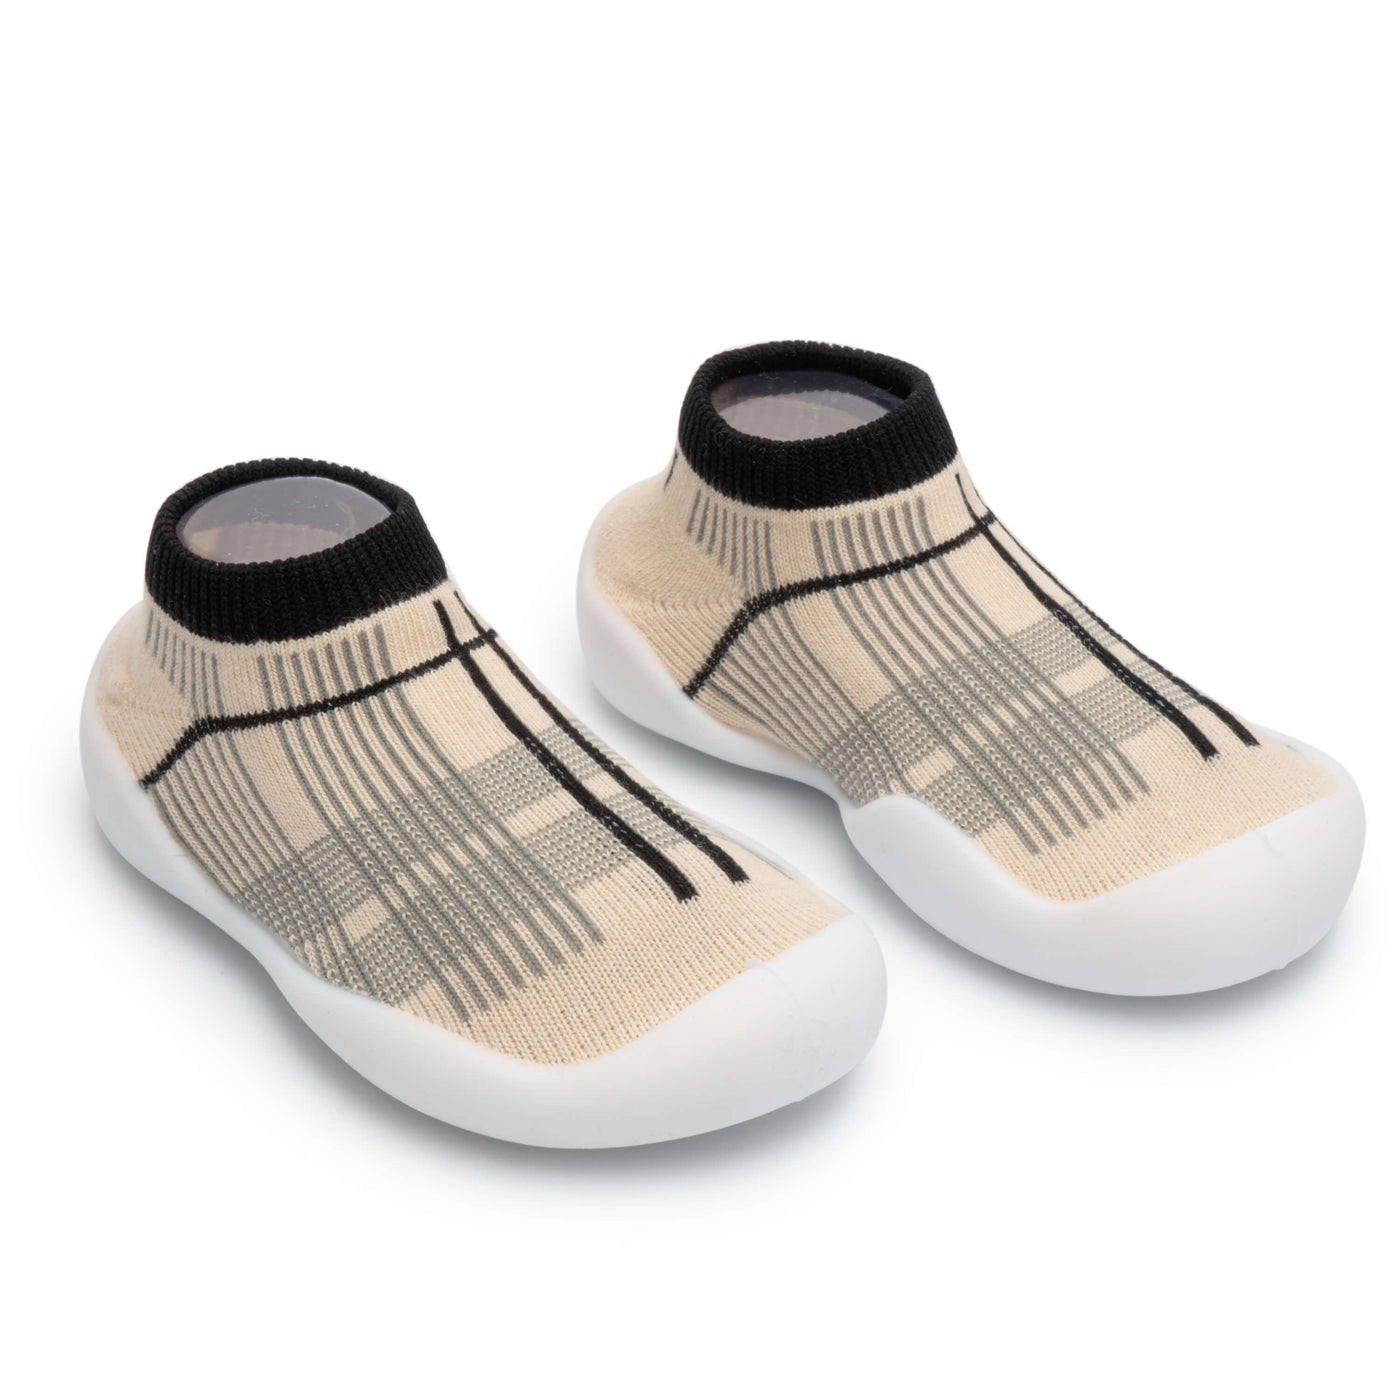 Wild & Chic - Non-Slip Baby Shoe-Socks